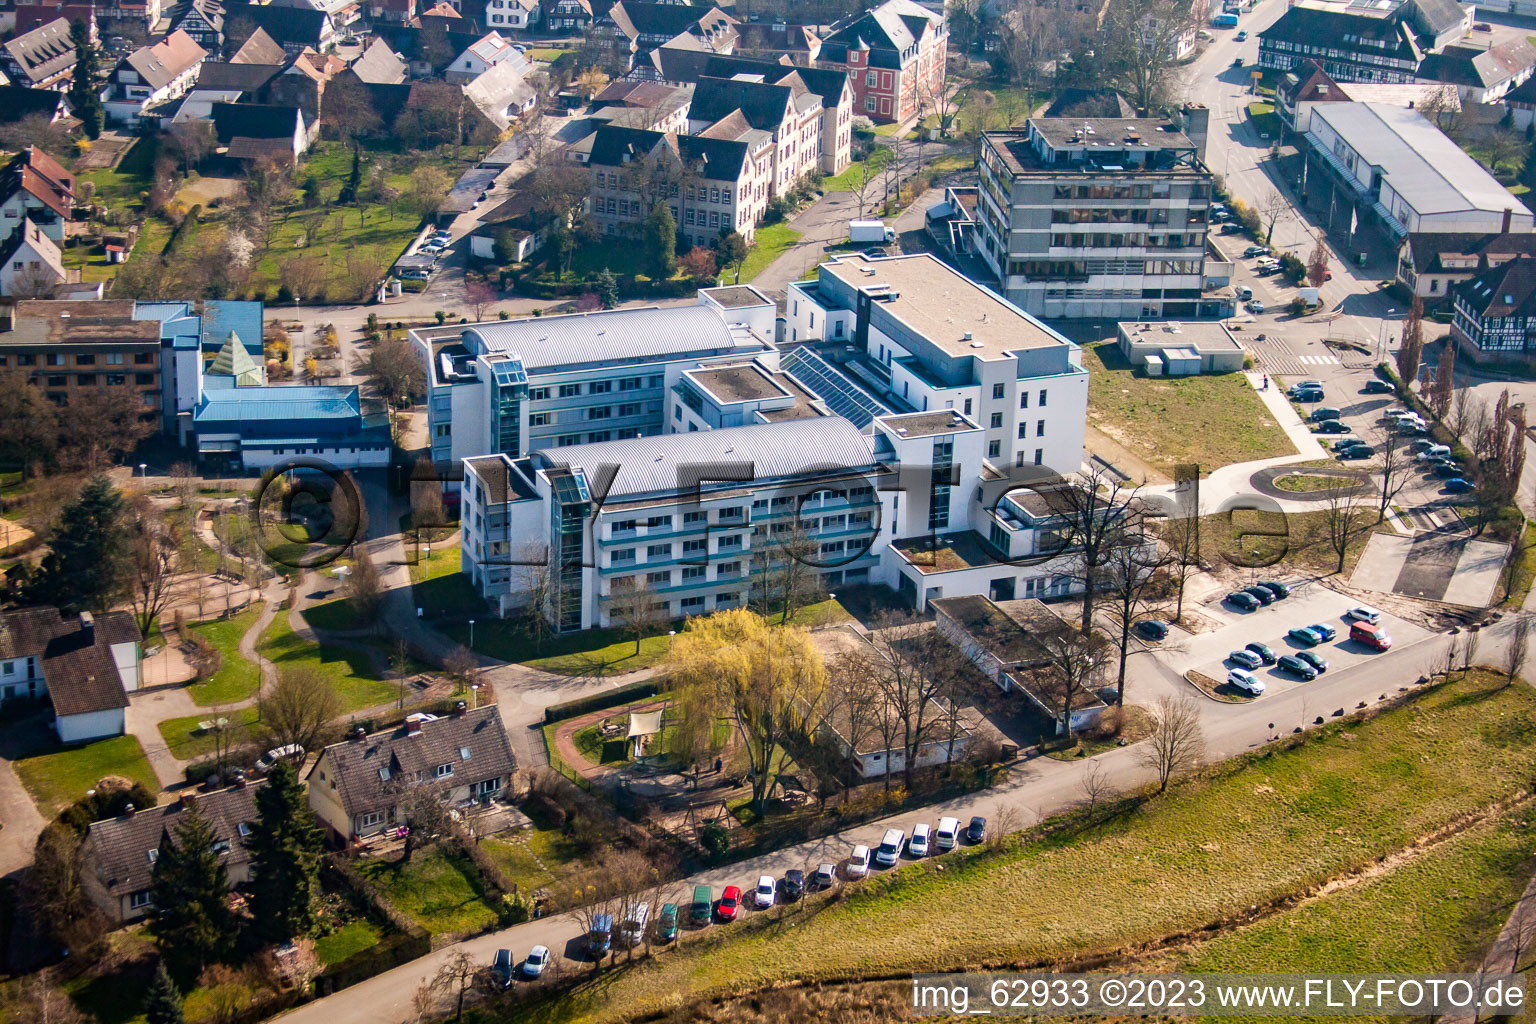 Centre d'épilepsie Kork à le quartier Kork in Kehl dans le département Bade-Wurtemberg, Allemagne vue d'en haut